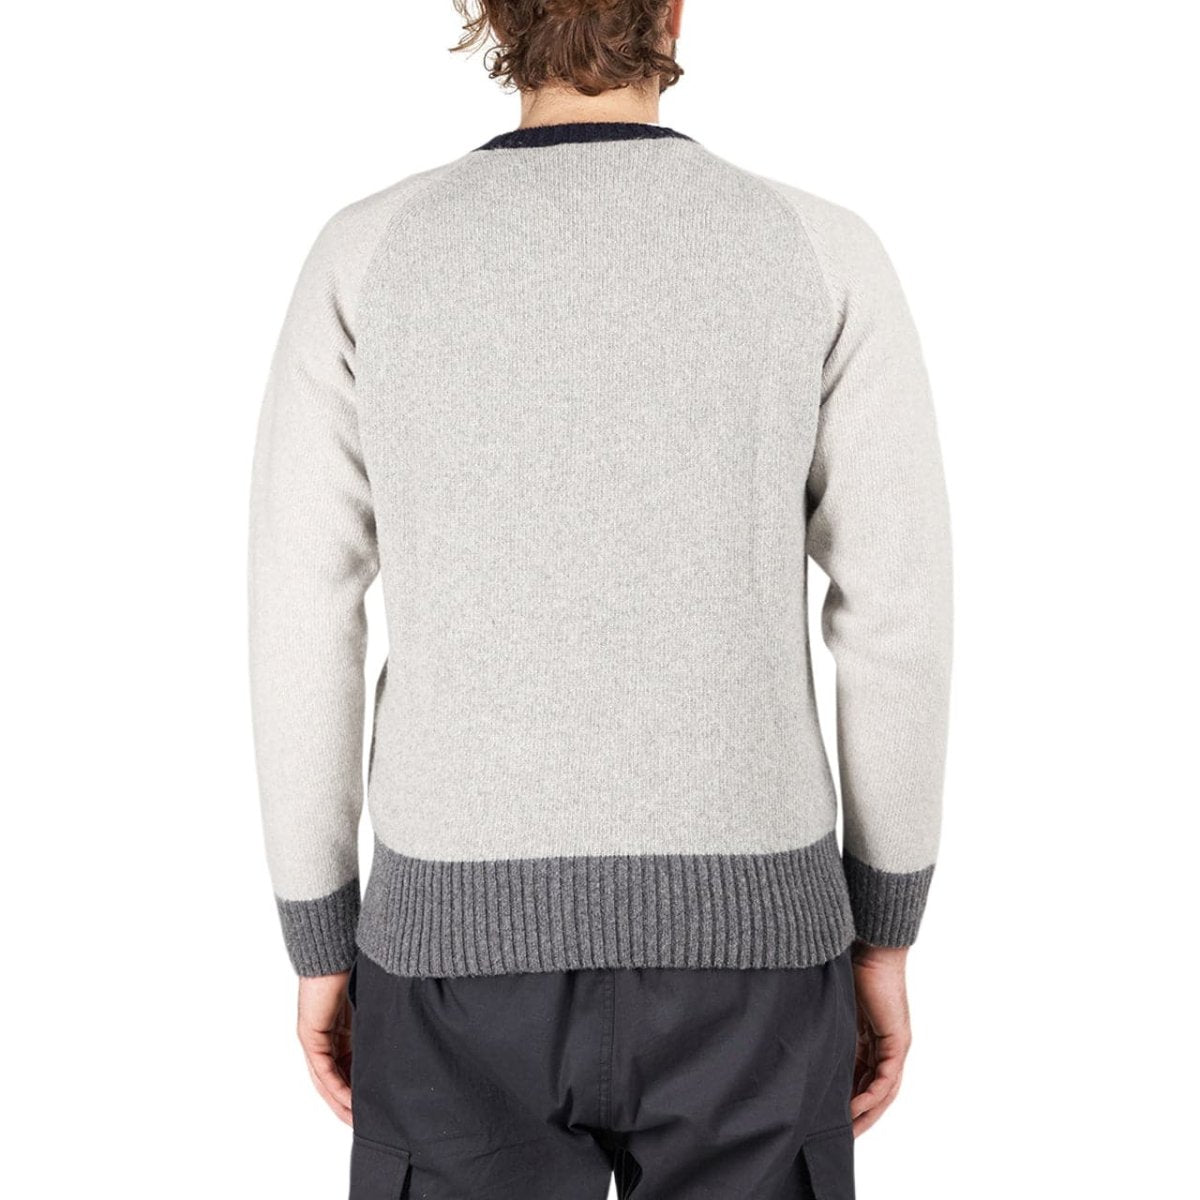 Edmmond Studios Sleeve Sweater (Grau)  - Allike Store